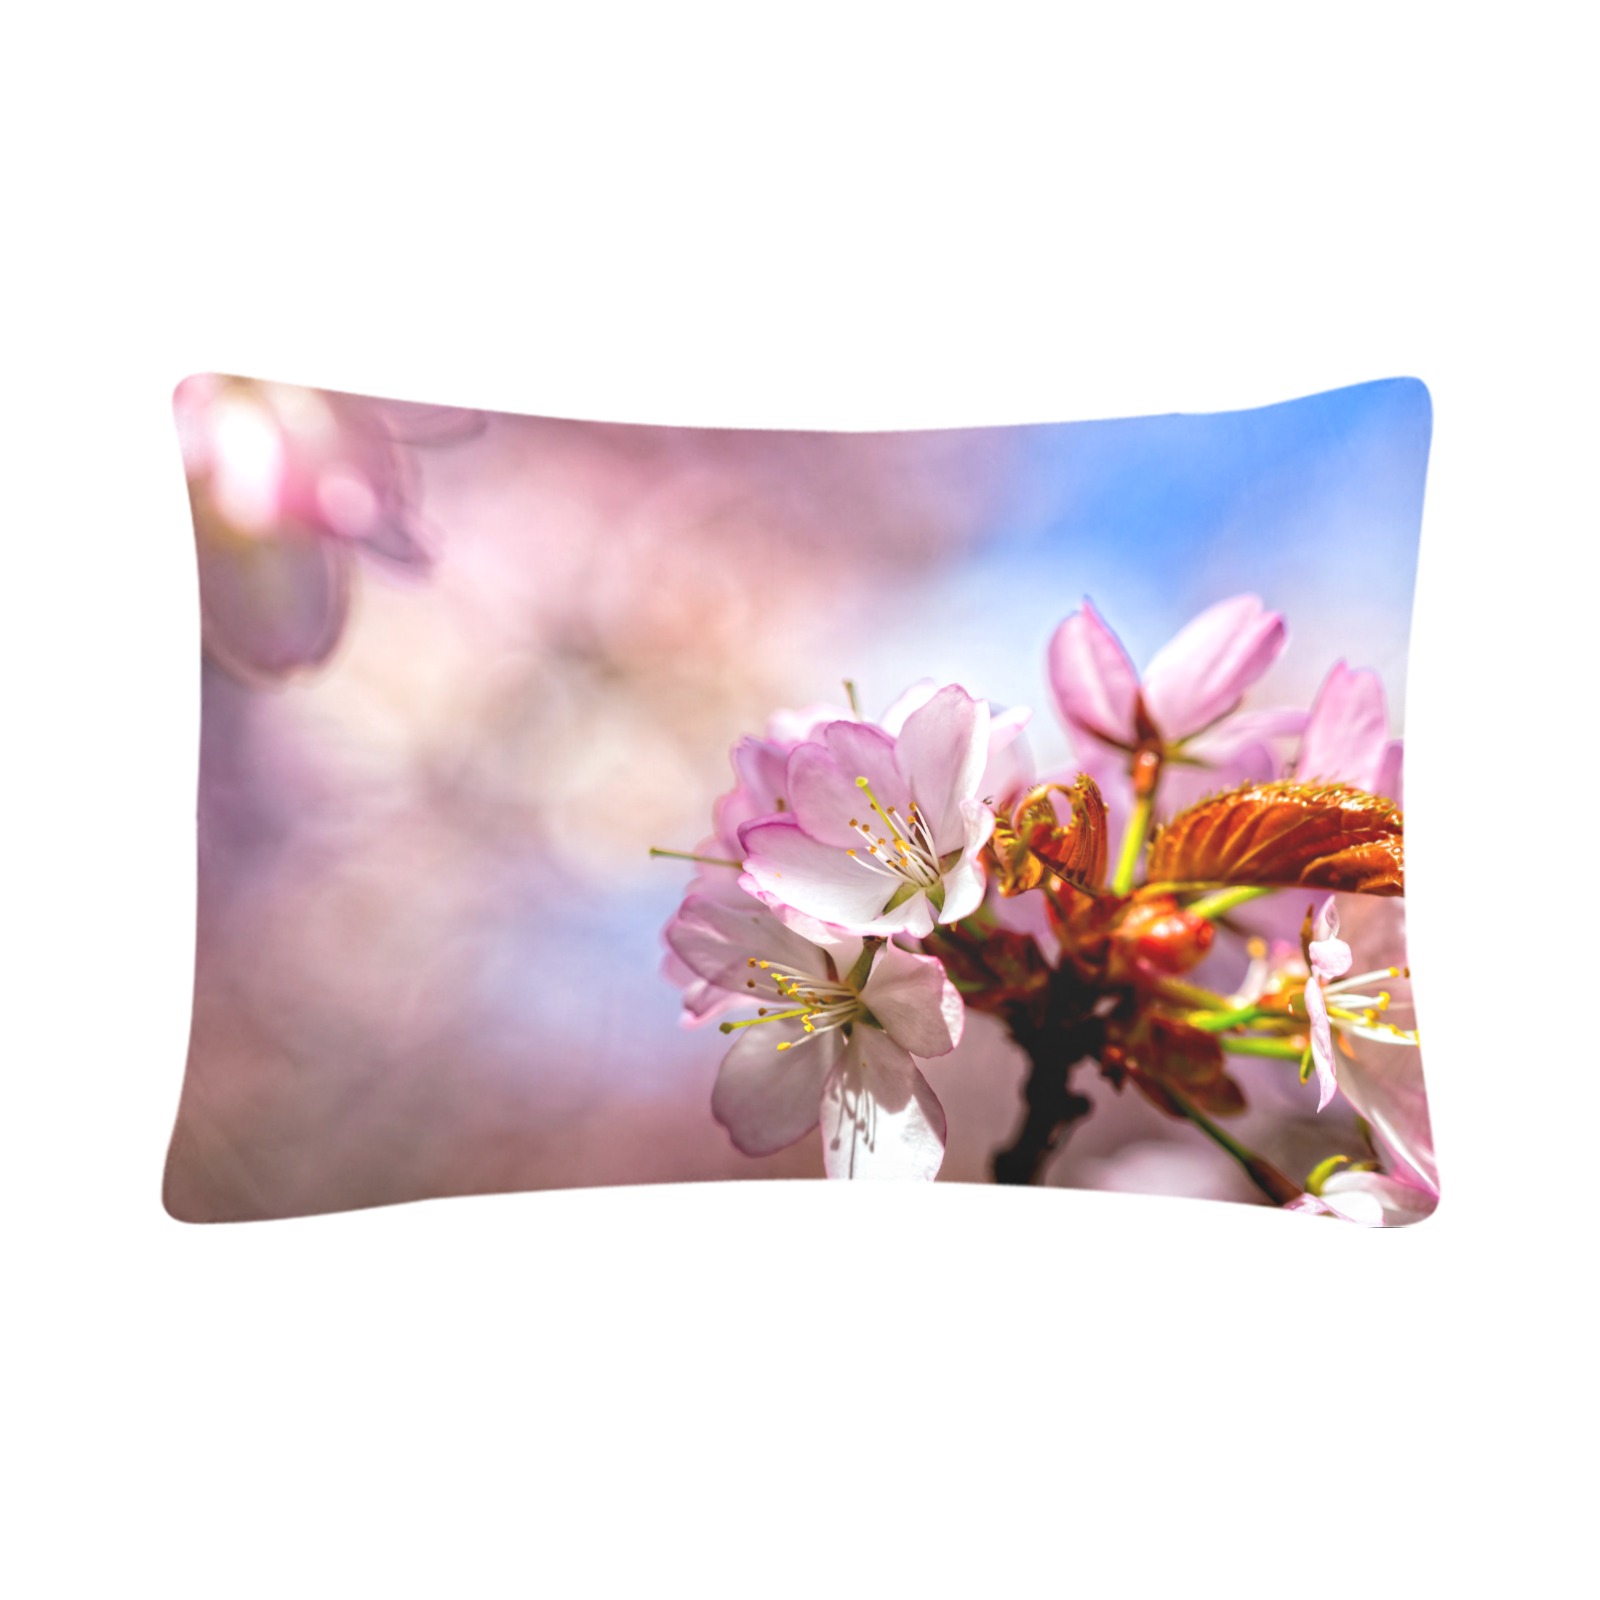 Short life, eternal magic of sakura cherry flowers Custom Pillow Case 20"x 30" (One Side) (Set of 2)